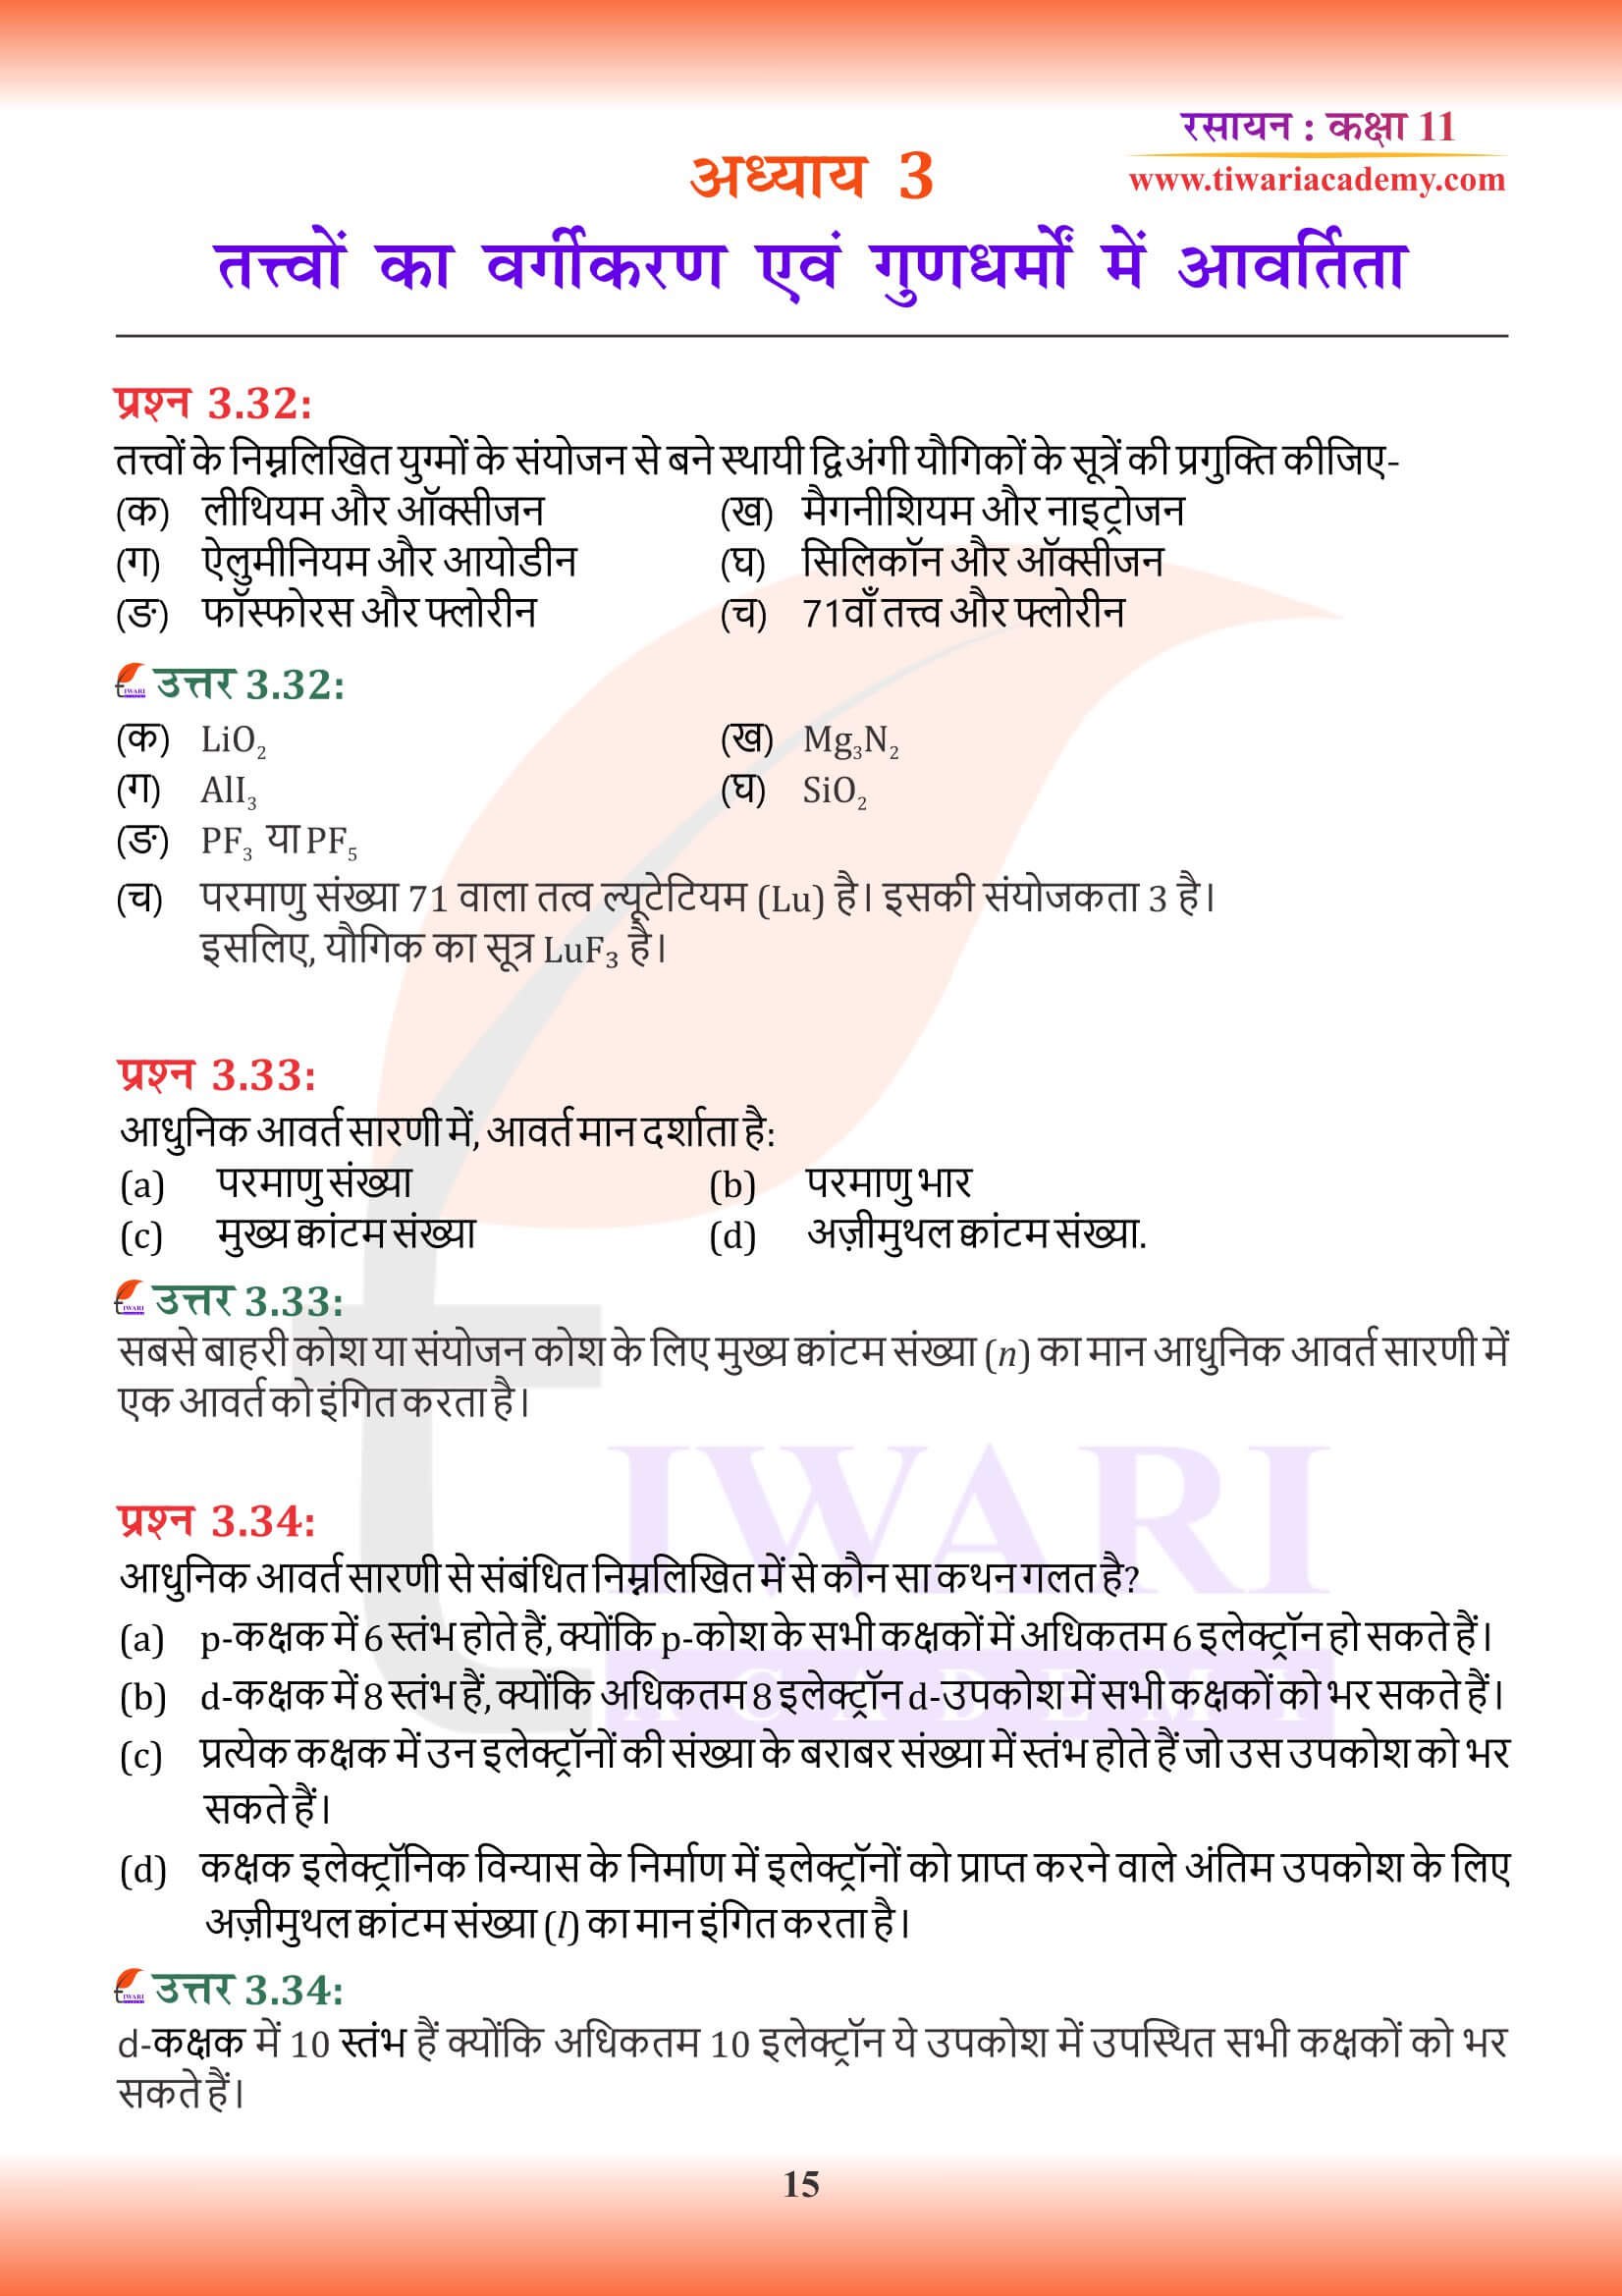 कक्षा 11 रसायन अध्याय 3 हिंदी में हल